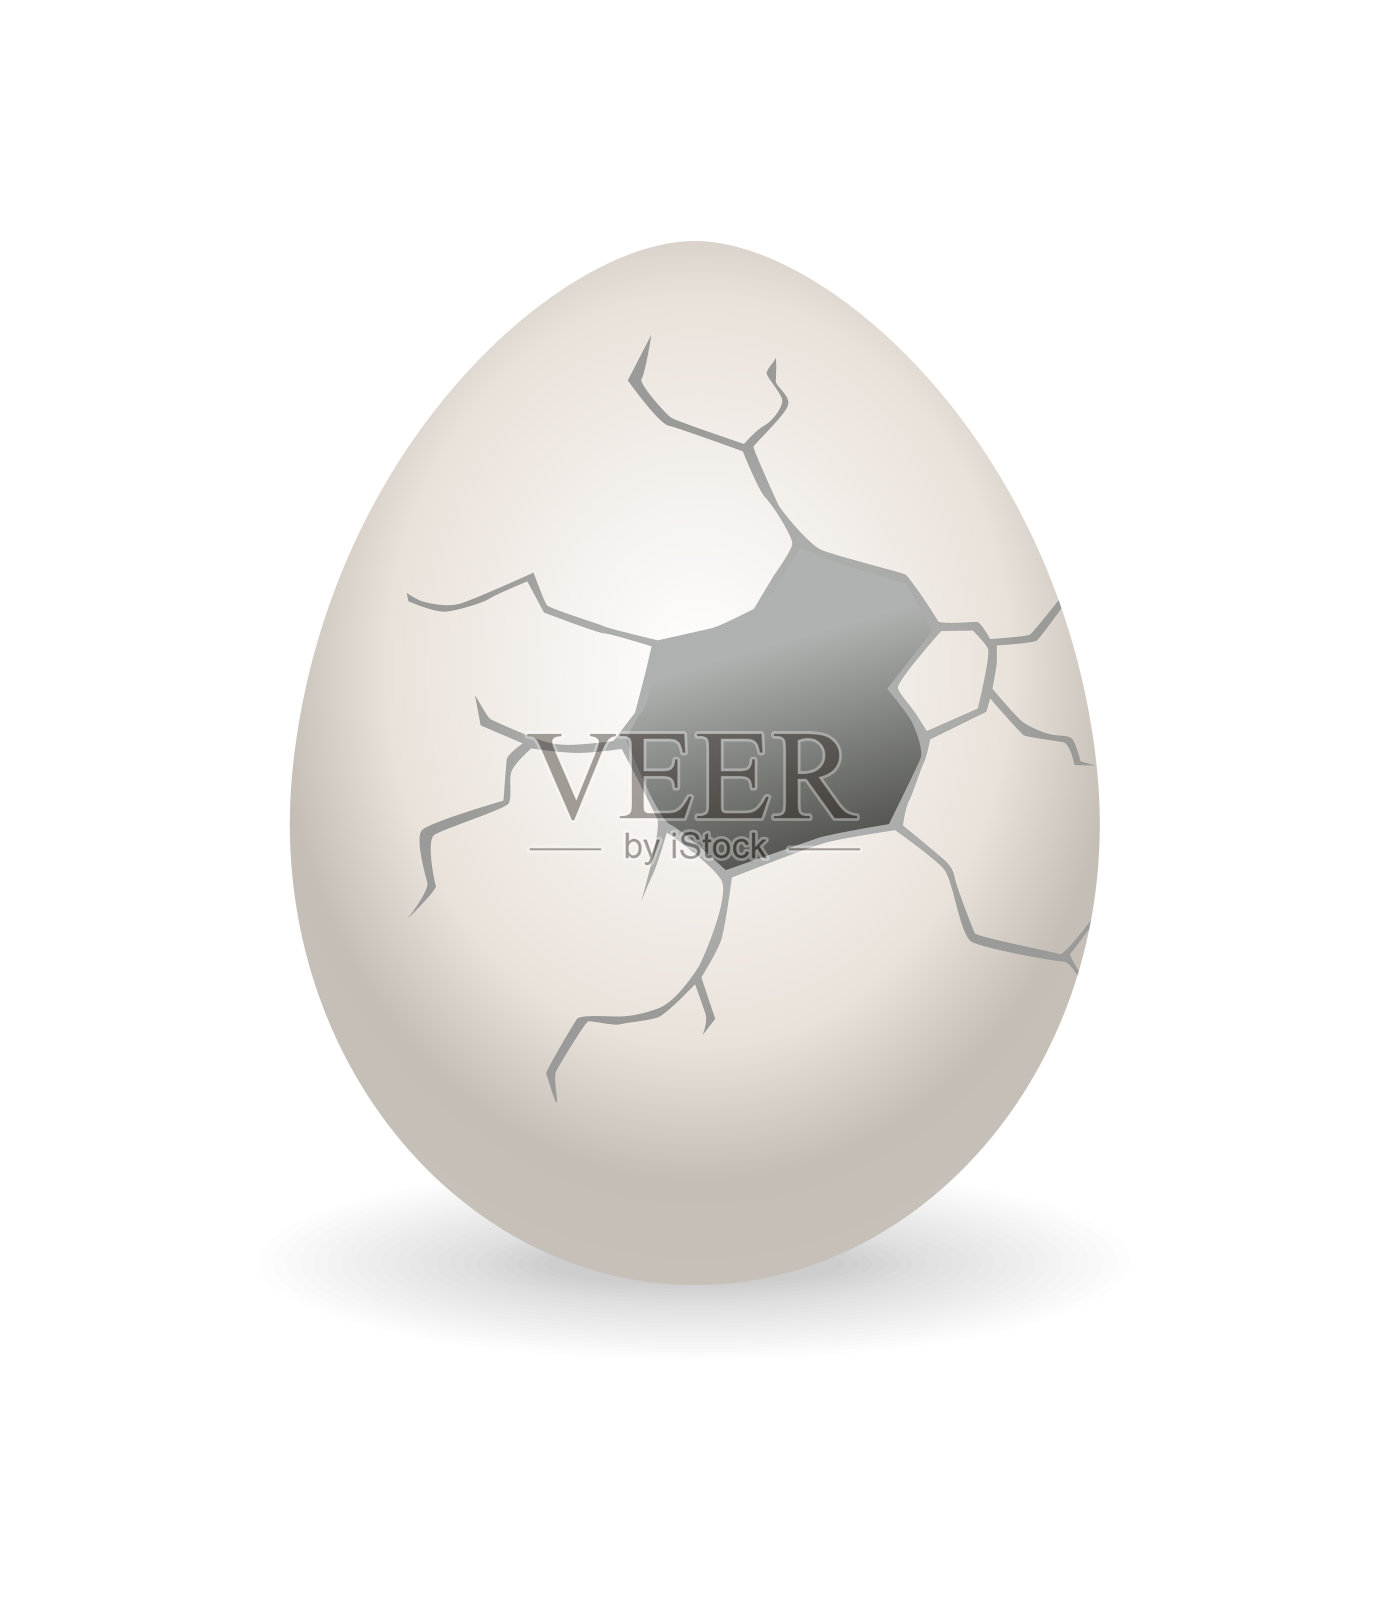 裂缝的鸡蛋。蛋壳破裂阶段。逼真的鸡蛋破了蛋壳。易碎鸡蛋的设计元素插画图片素材